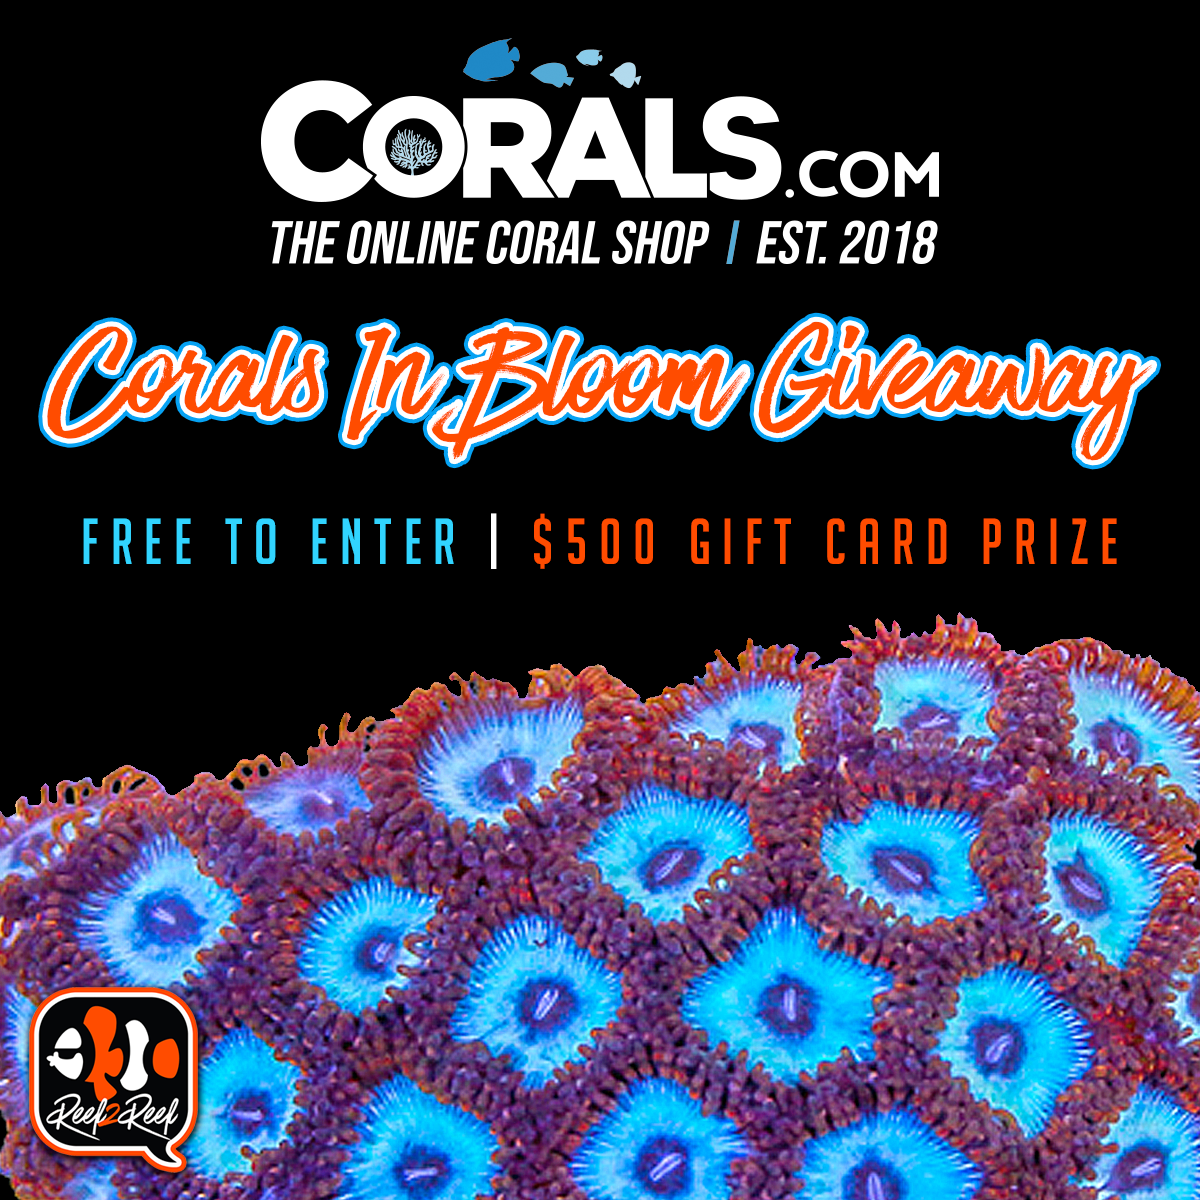 Corals.com Giveaway2 copy.png